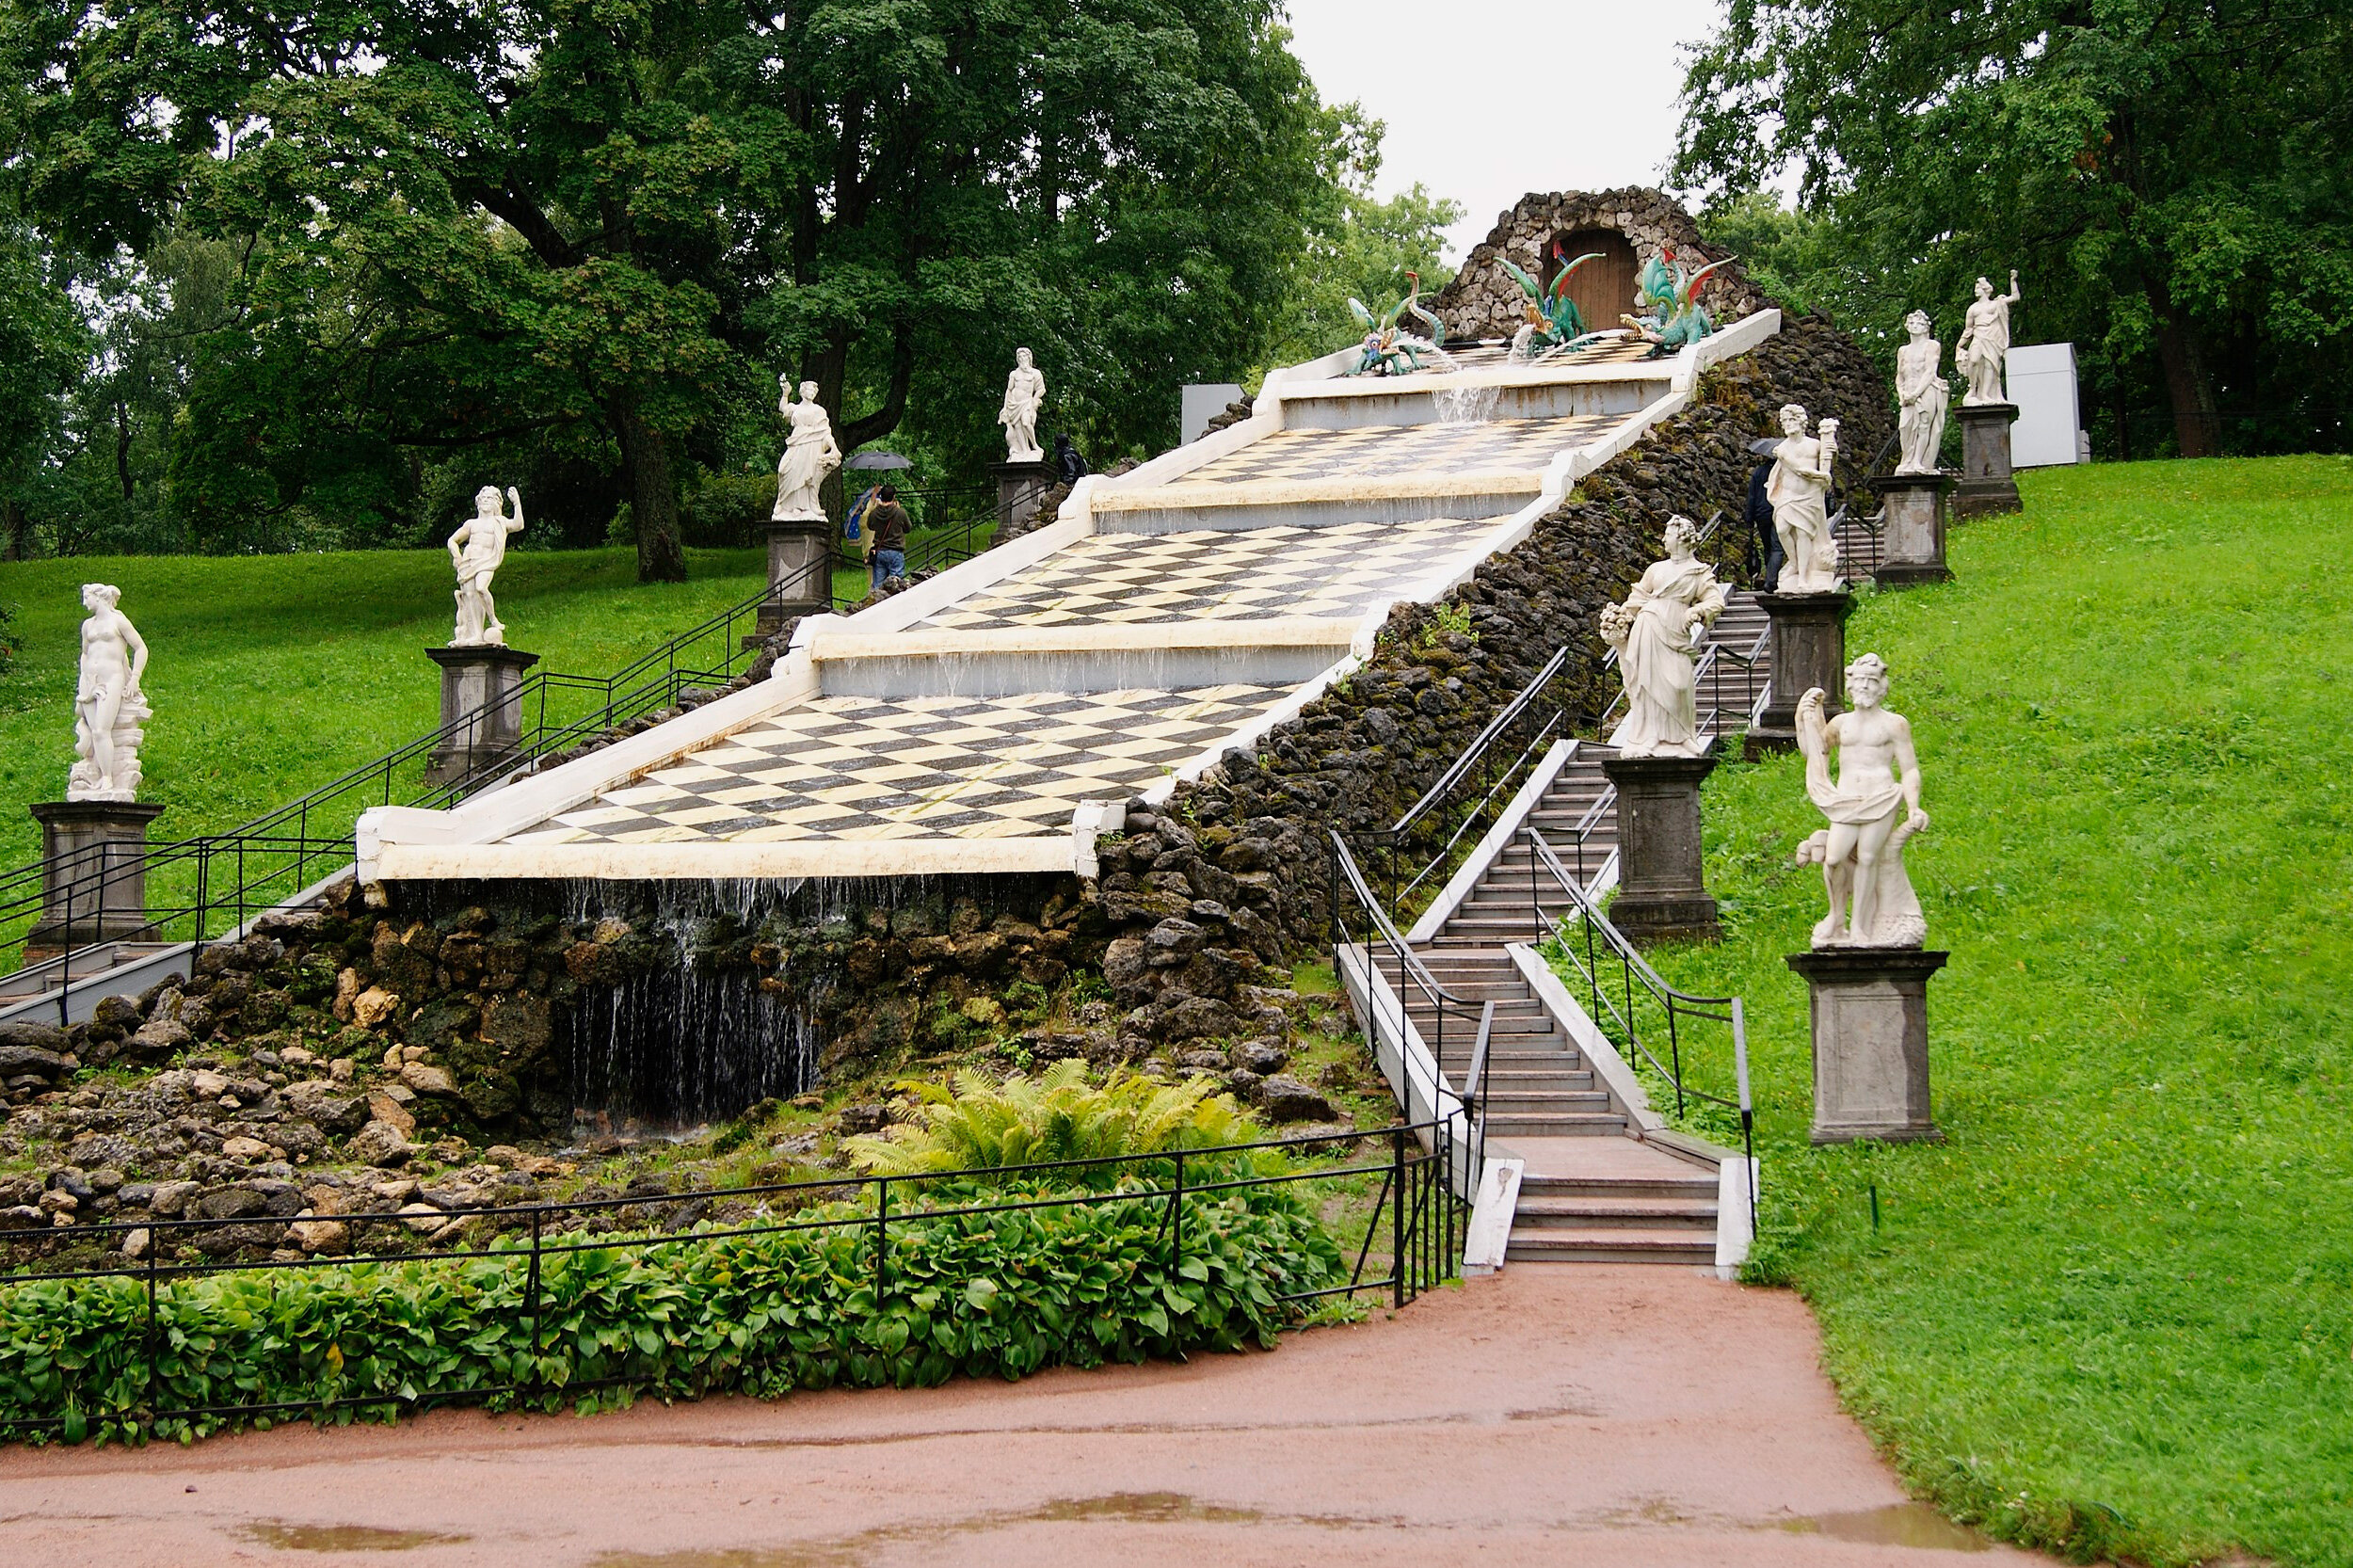 По двум сторонам фонтана наверх ведут лестницы, рядом с которыми выстроены каменные пьедесталы с белыми мраморными скульптурами десяти античных богов.